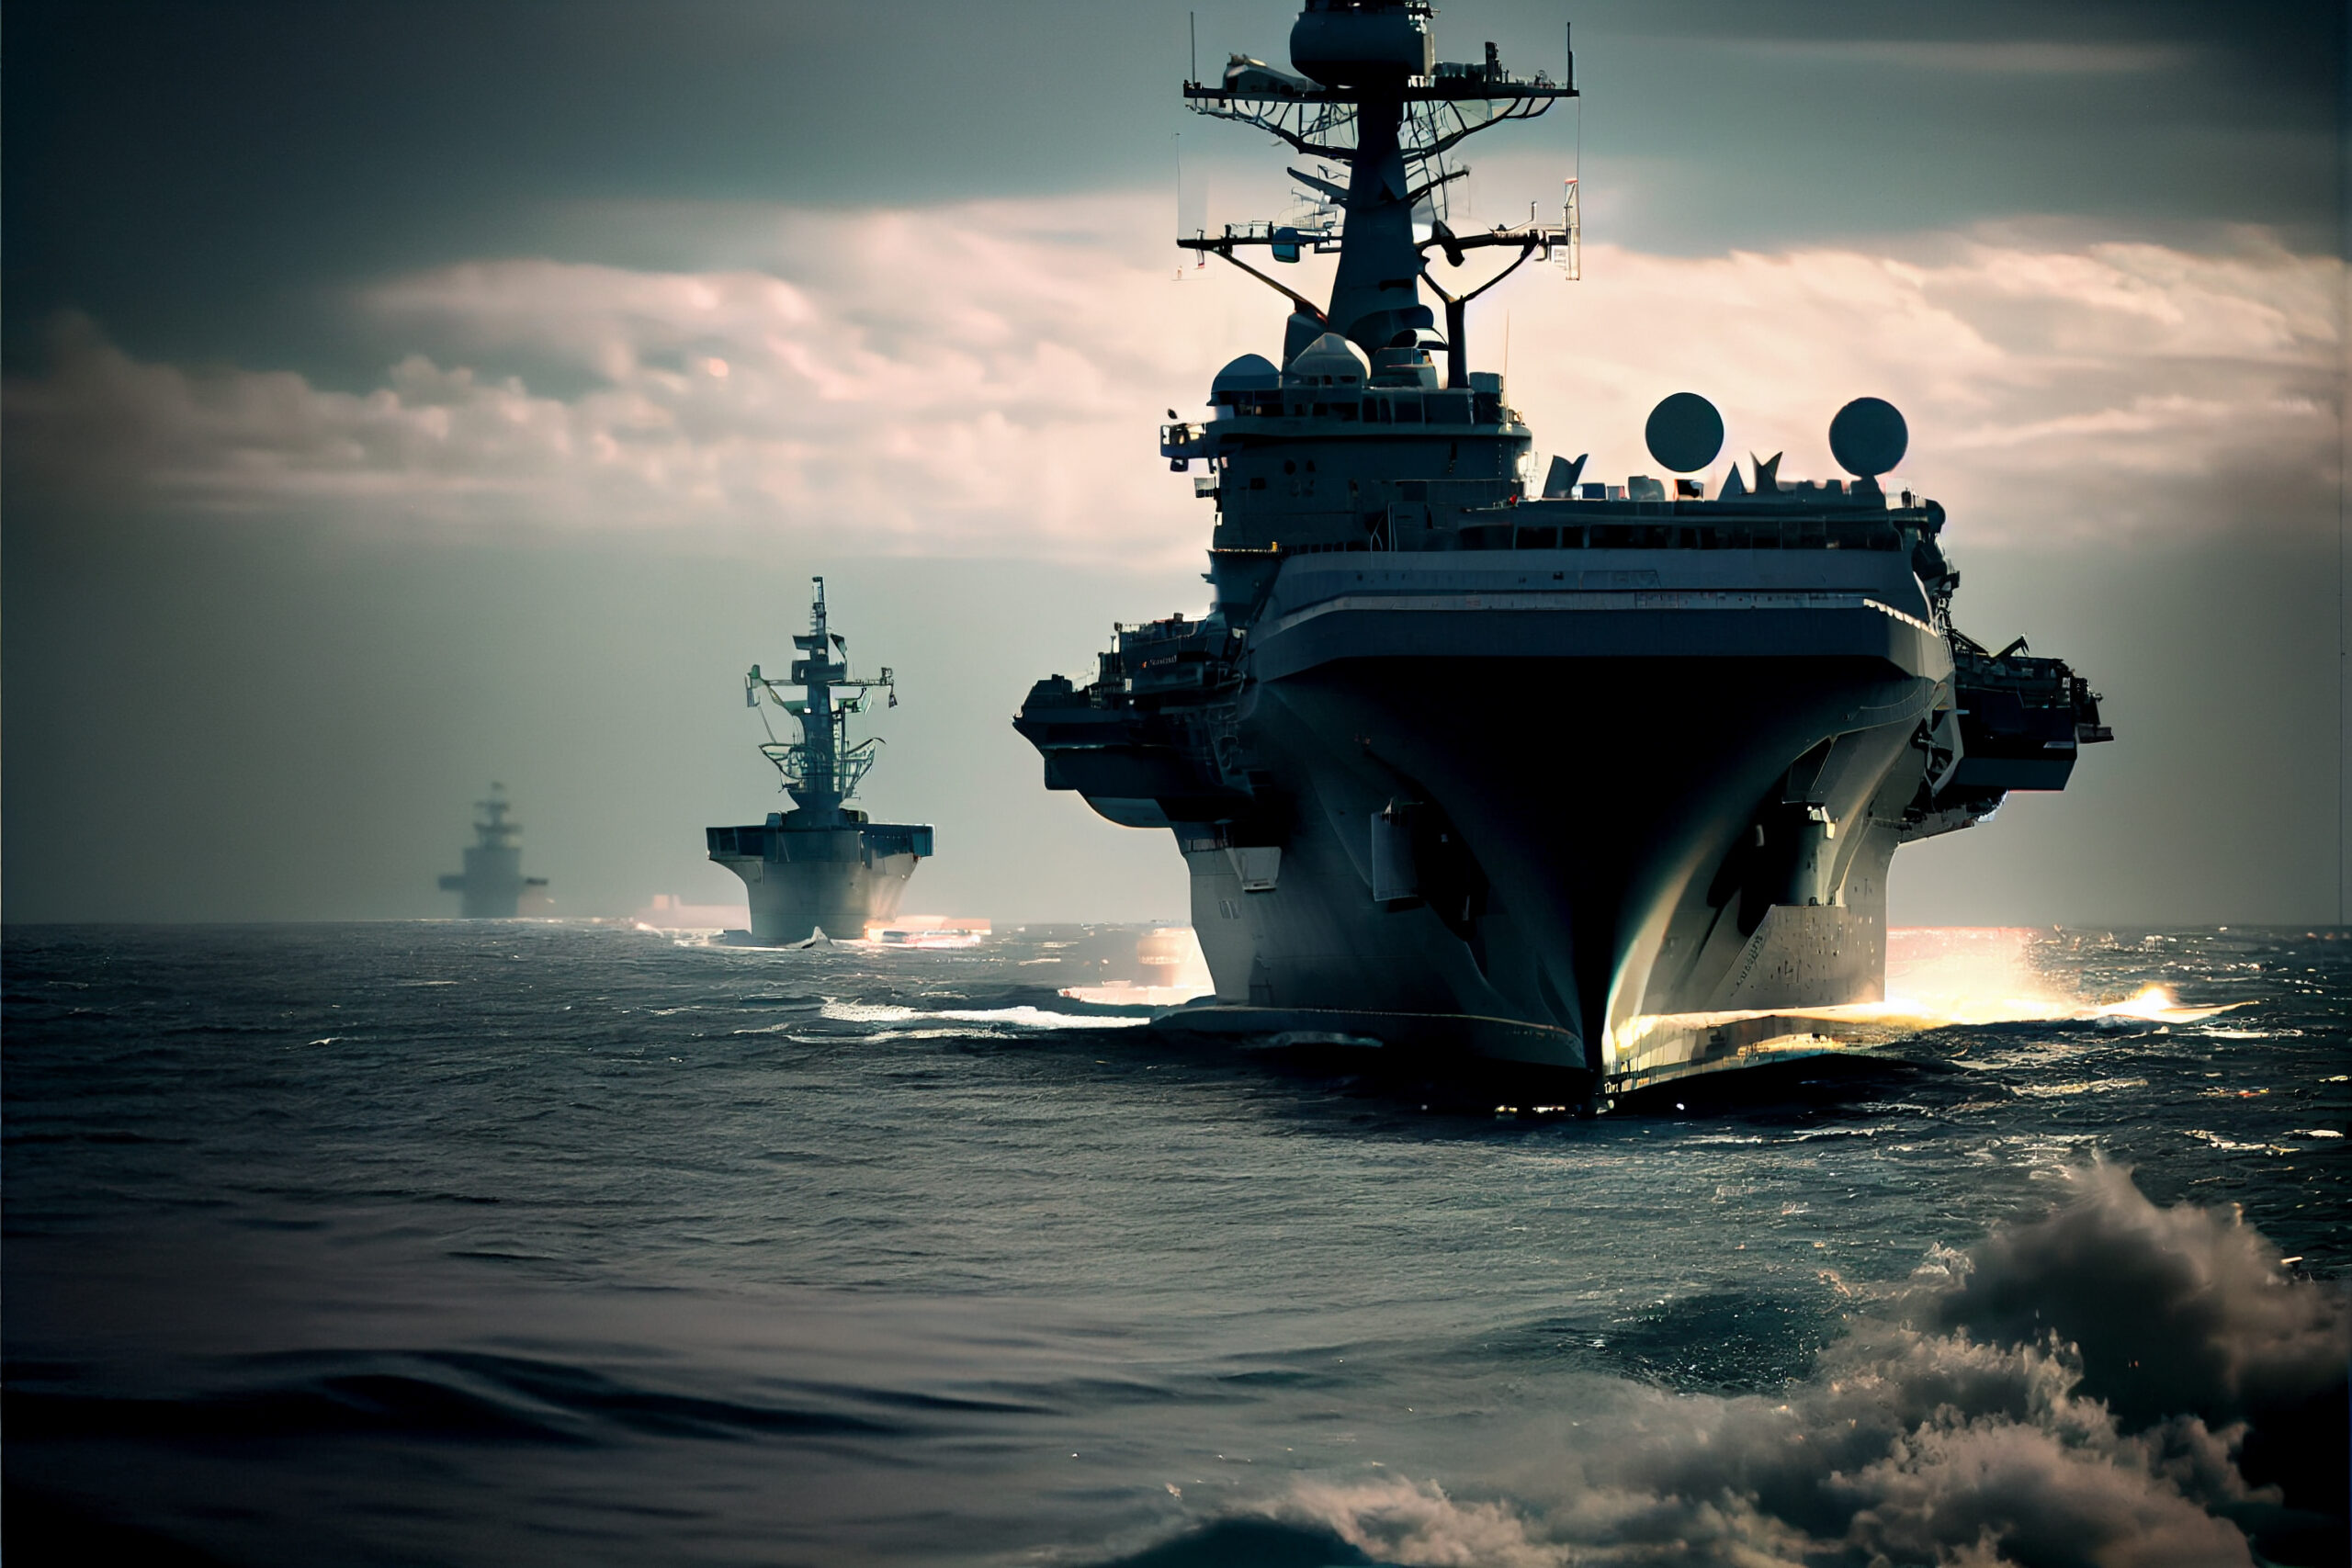 AI-assisted Image of navy ships at sea